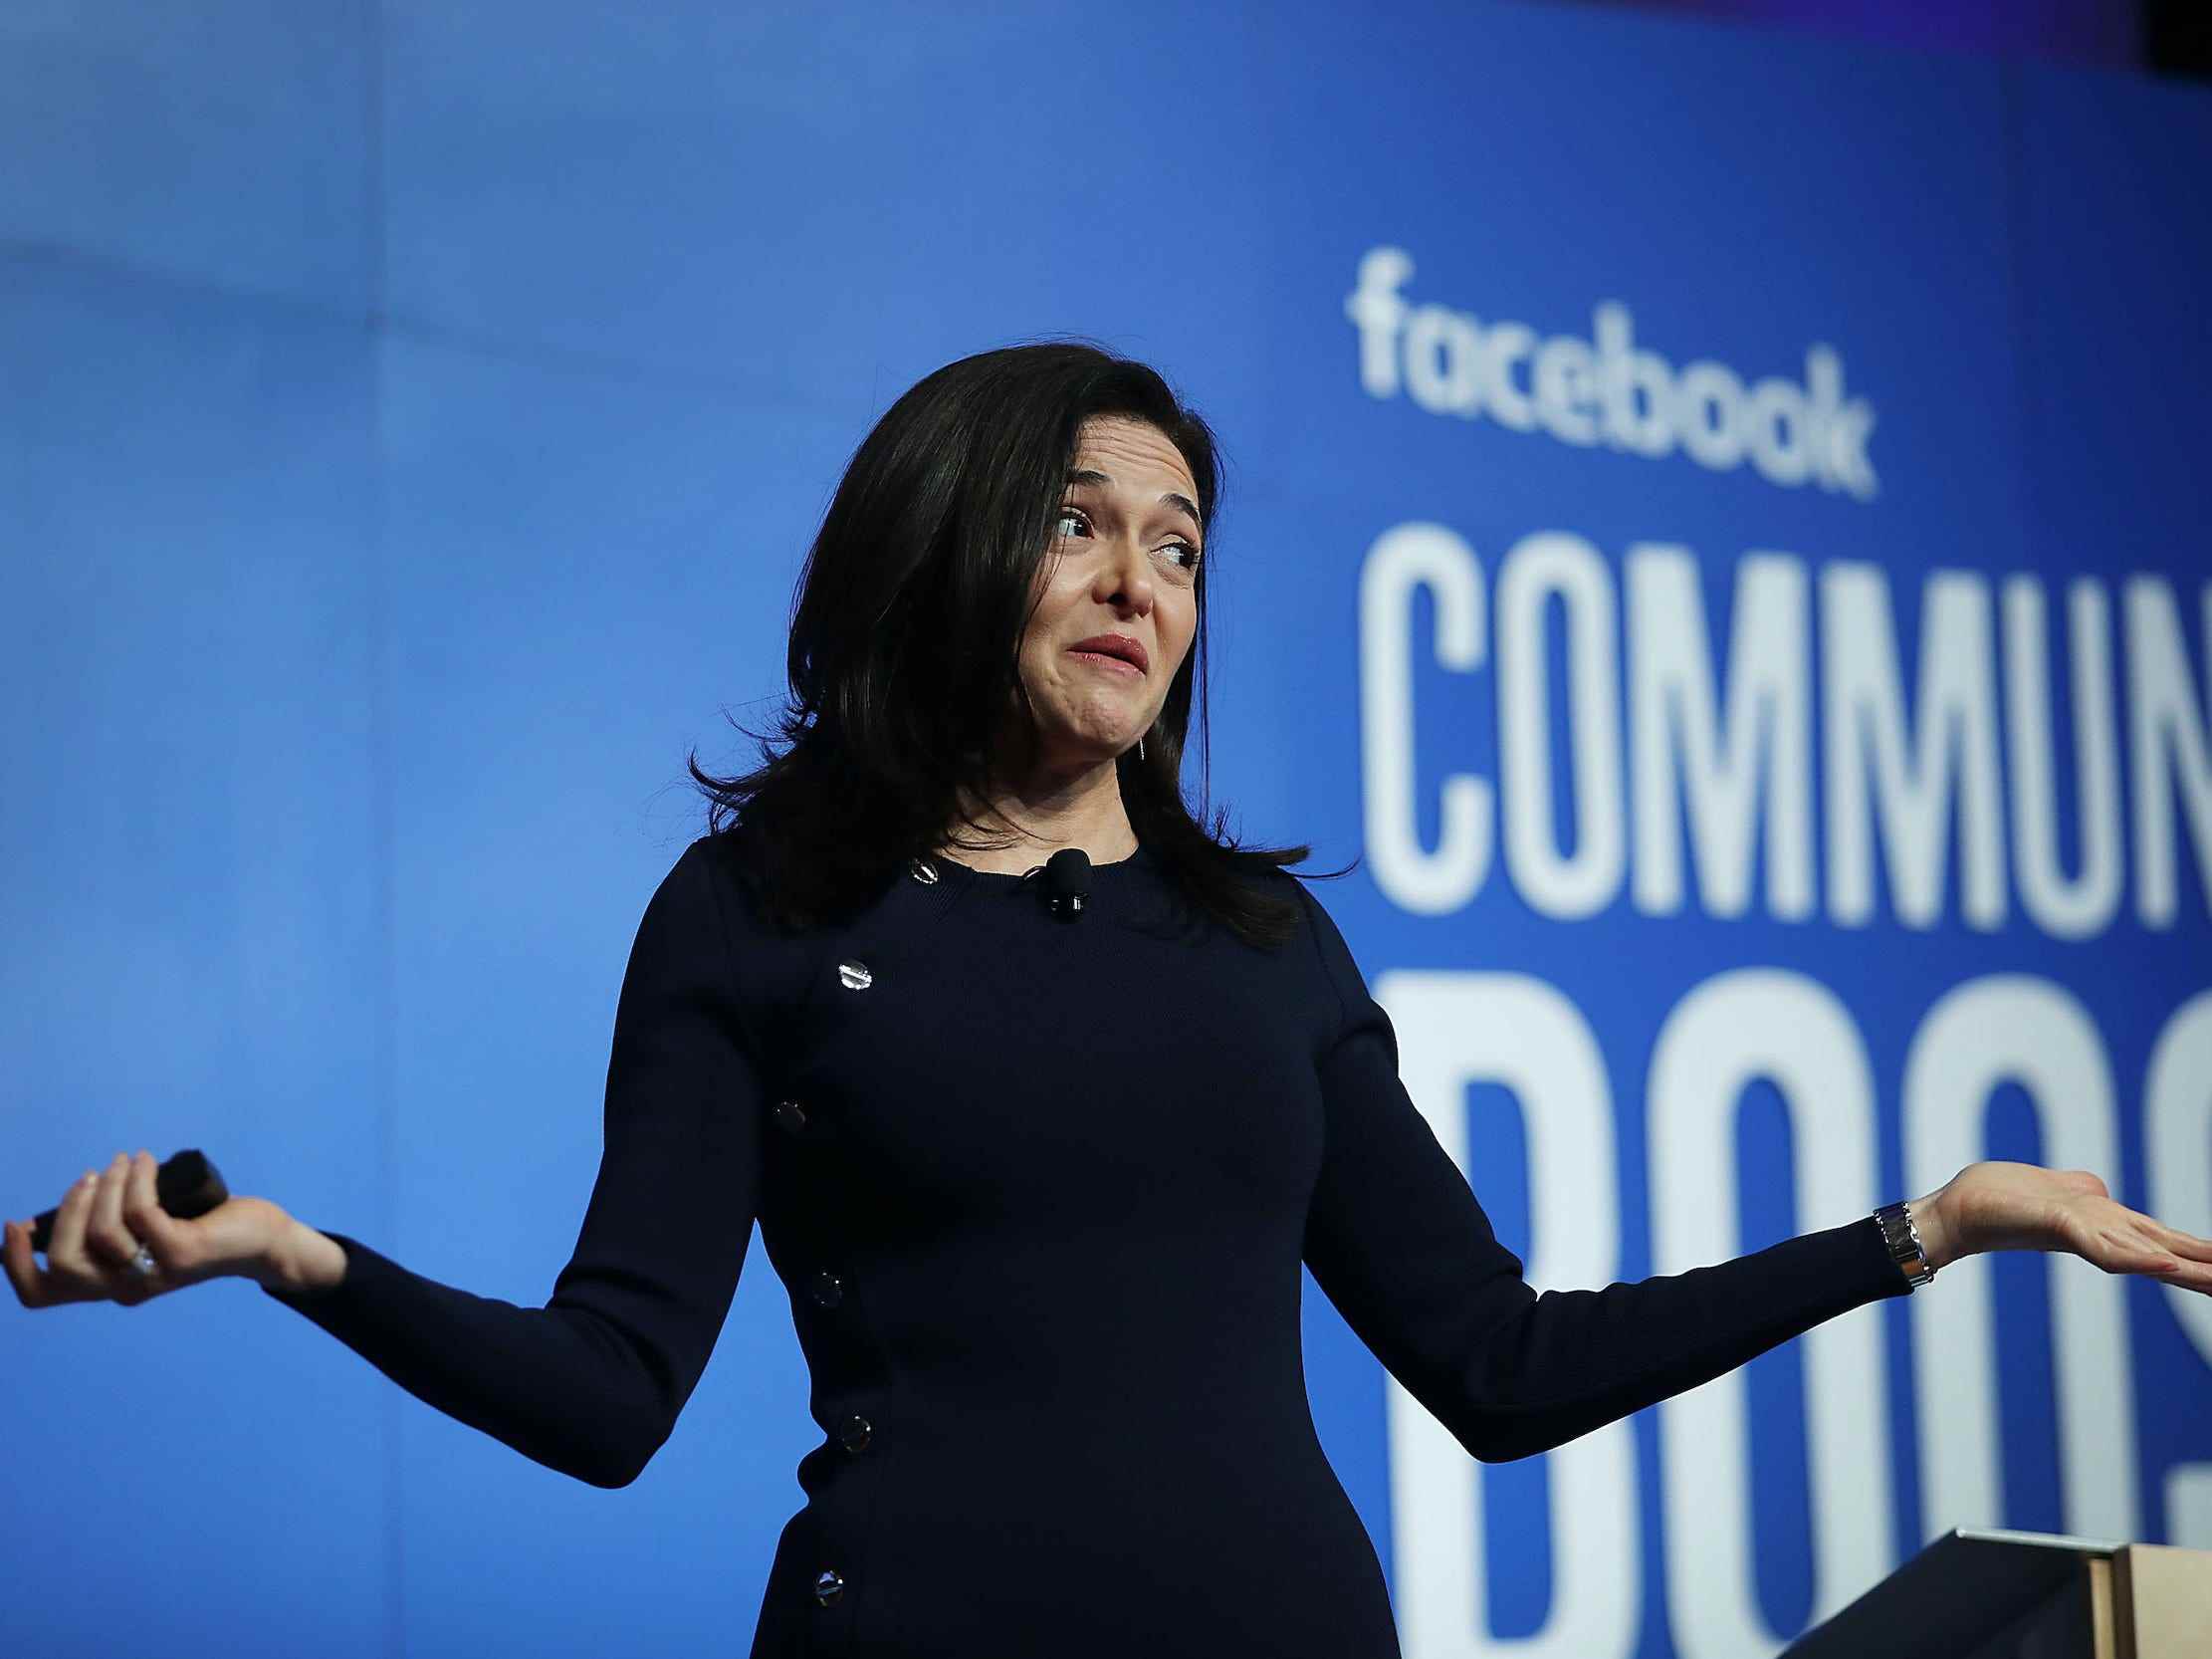 Sheryl Sandberg, COO von Meta, zuckt mit den Schultern, als sie bei einer Facebook-Veranstaltung auf der Bühne steht